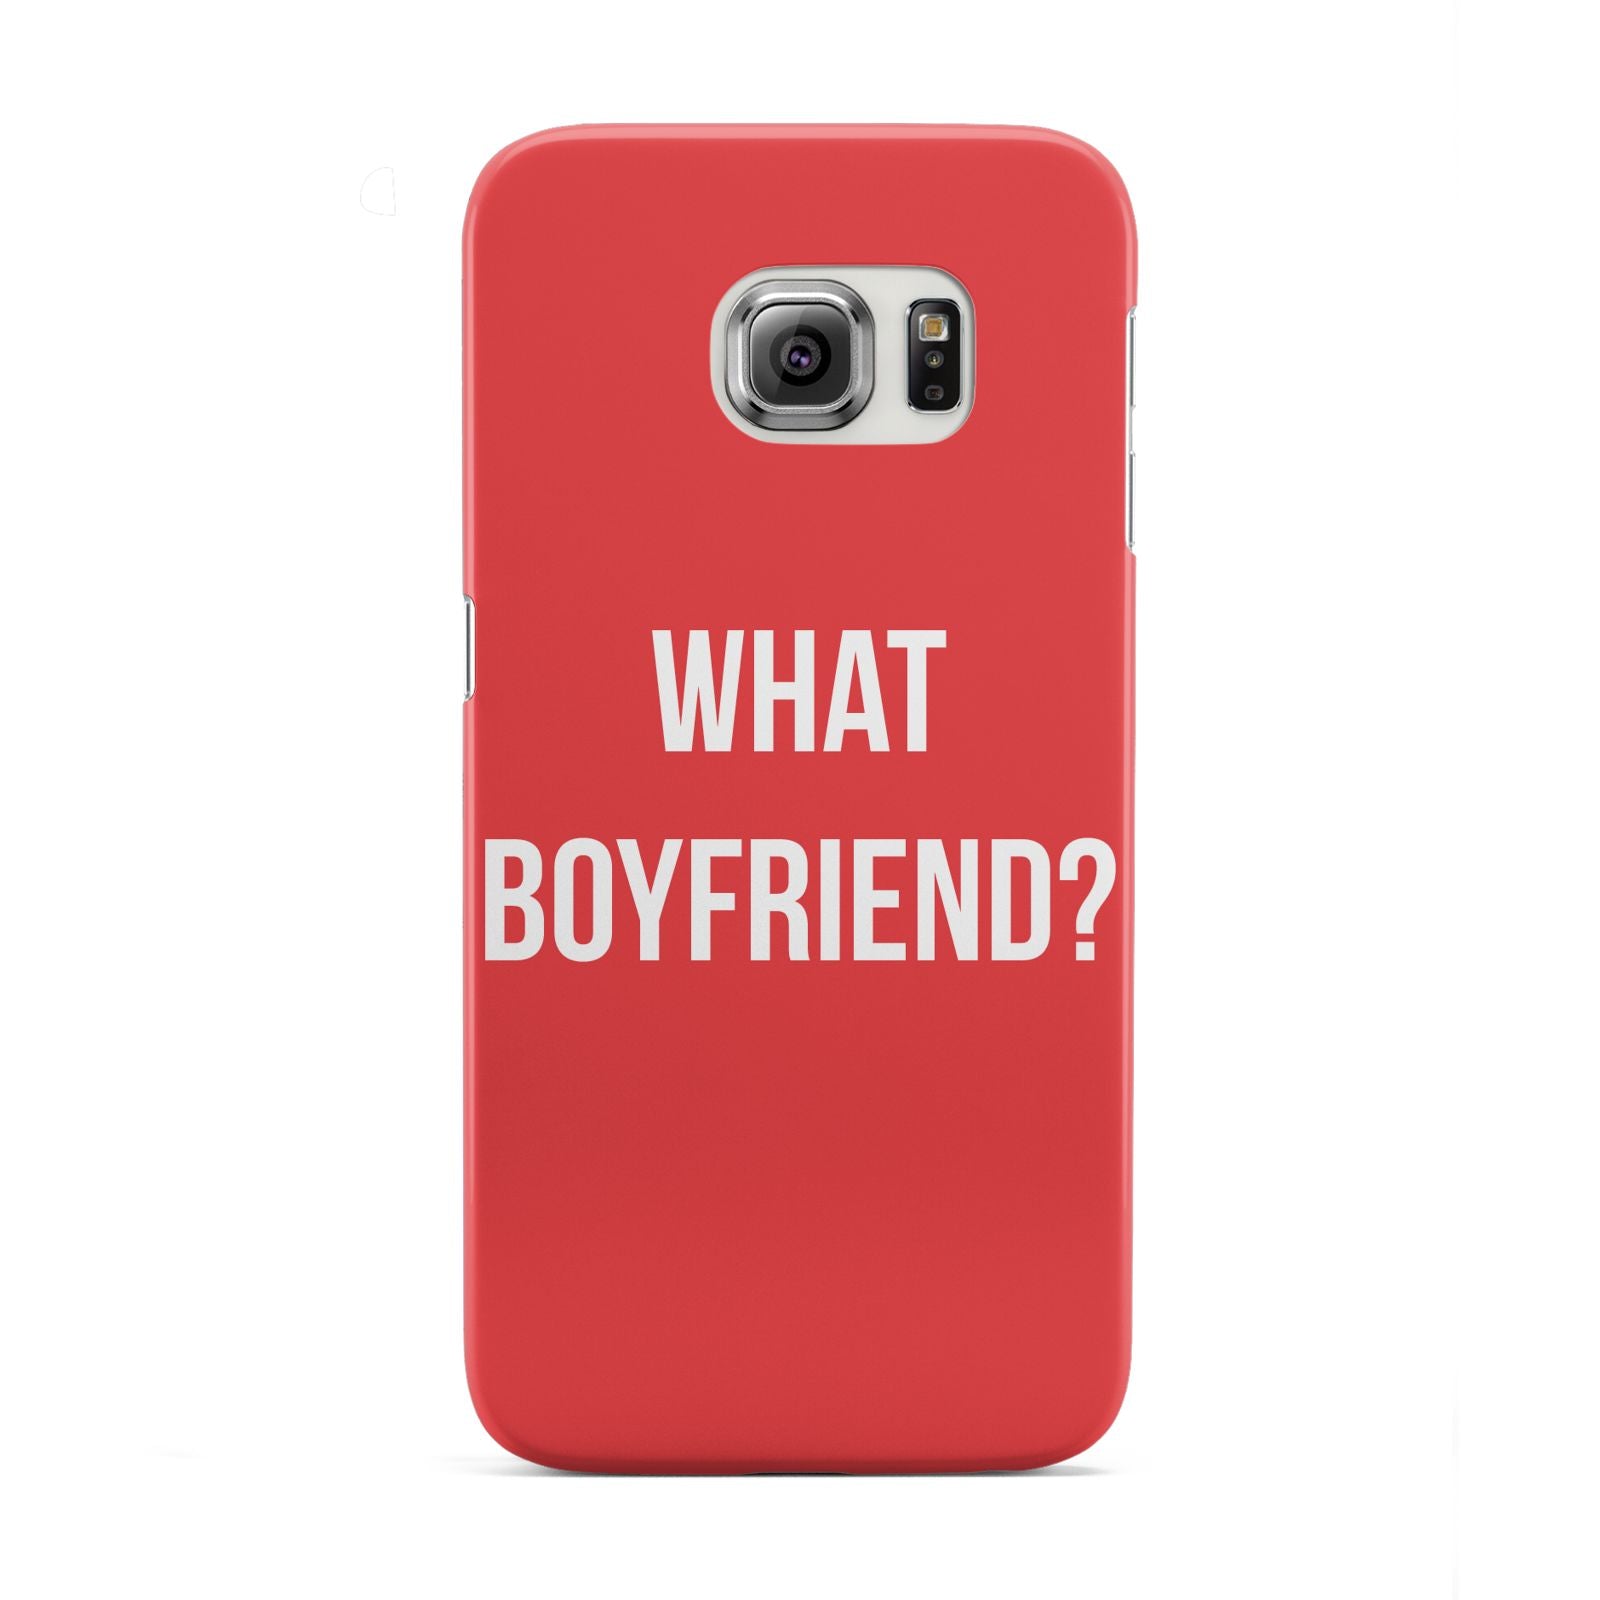 What Boyfriend Samsung Galaxy S6 Edge Case